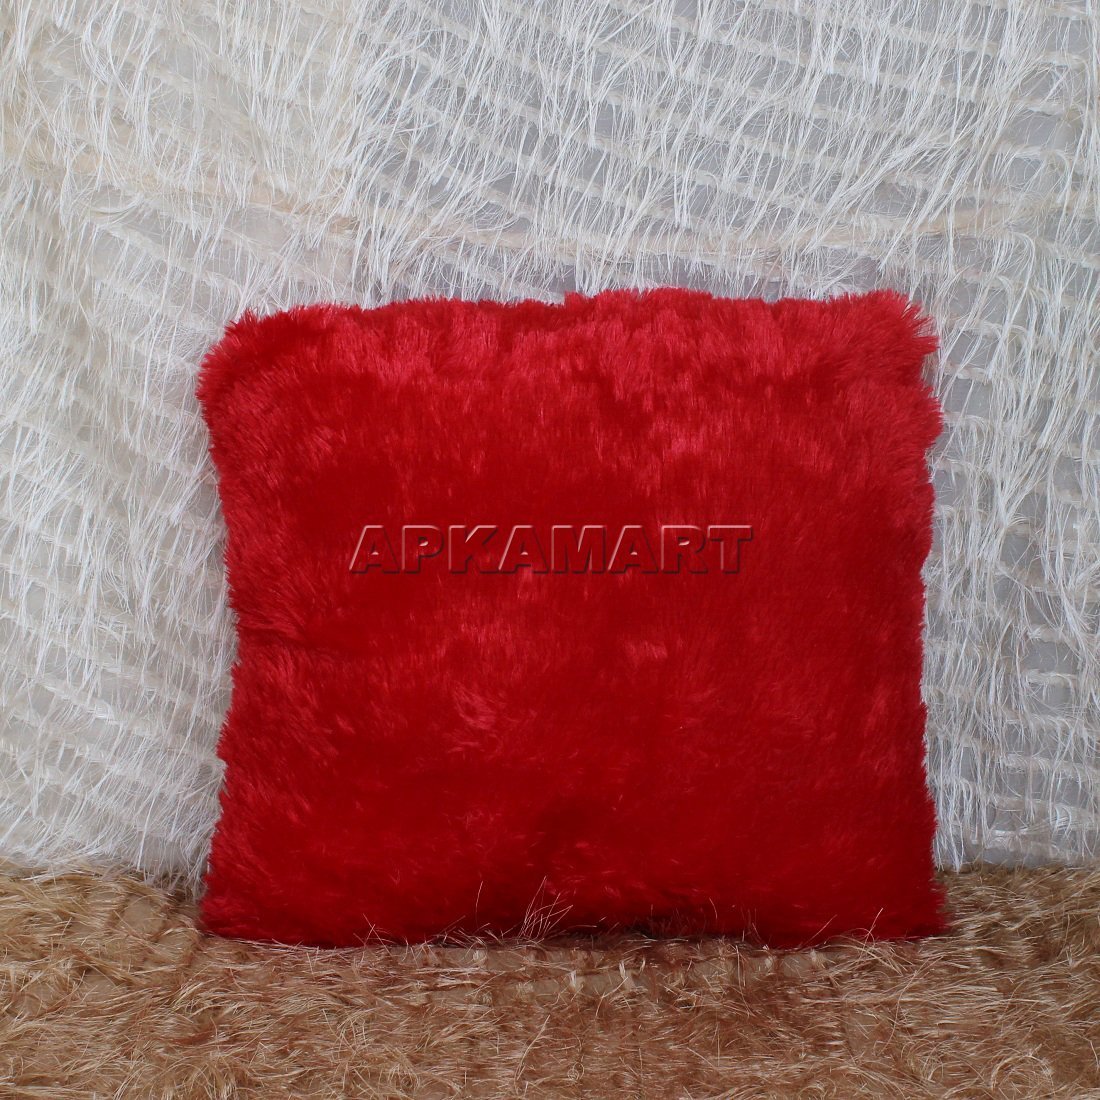 Red Pillow Soft Toy - ApkaMart